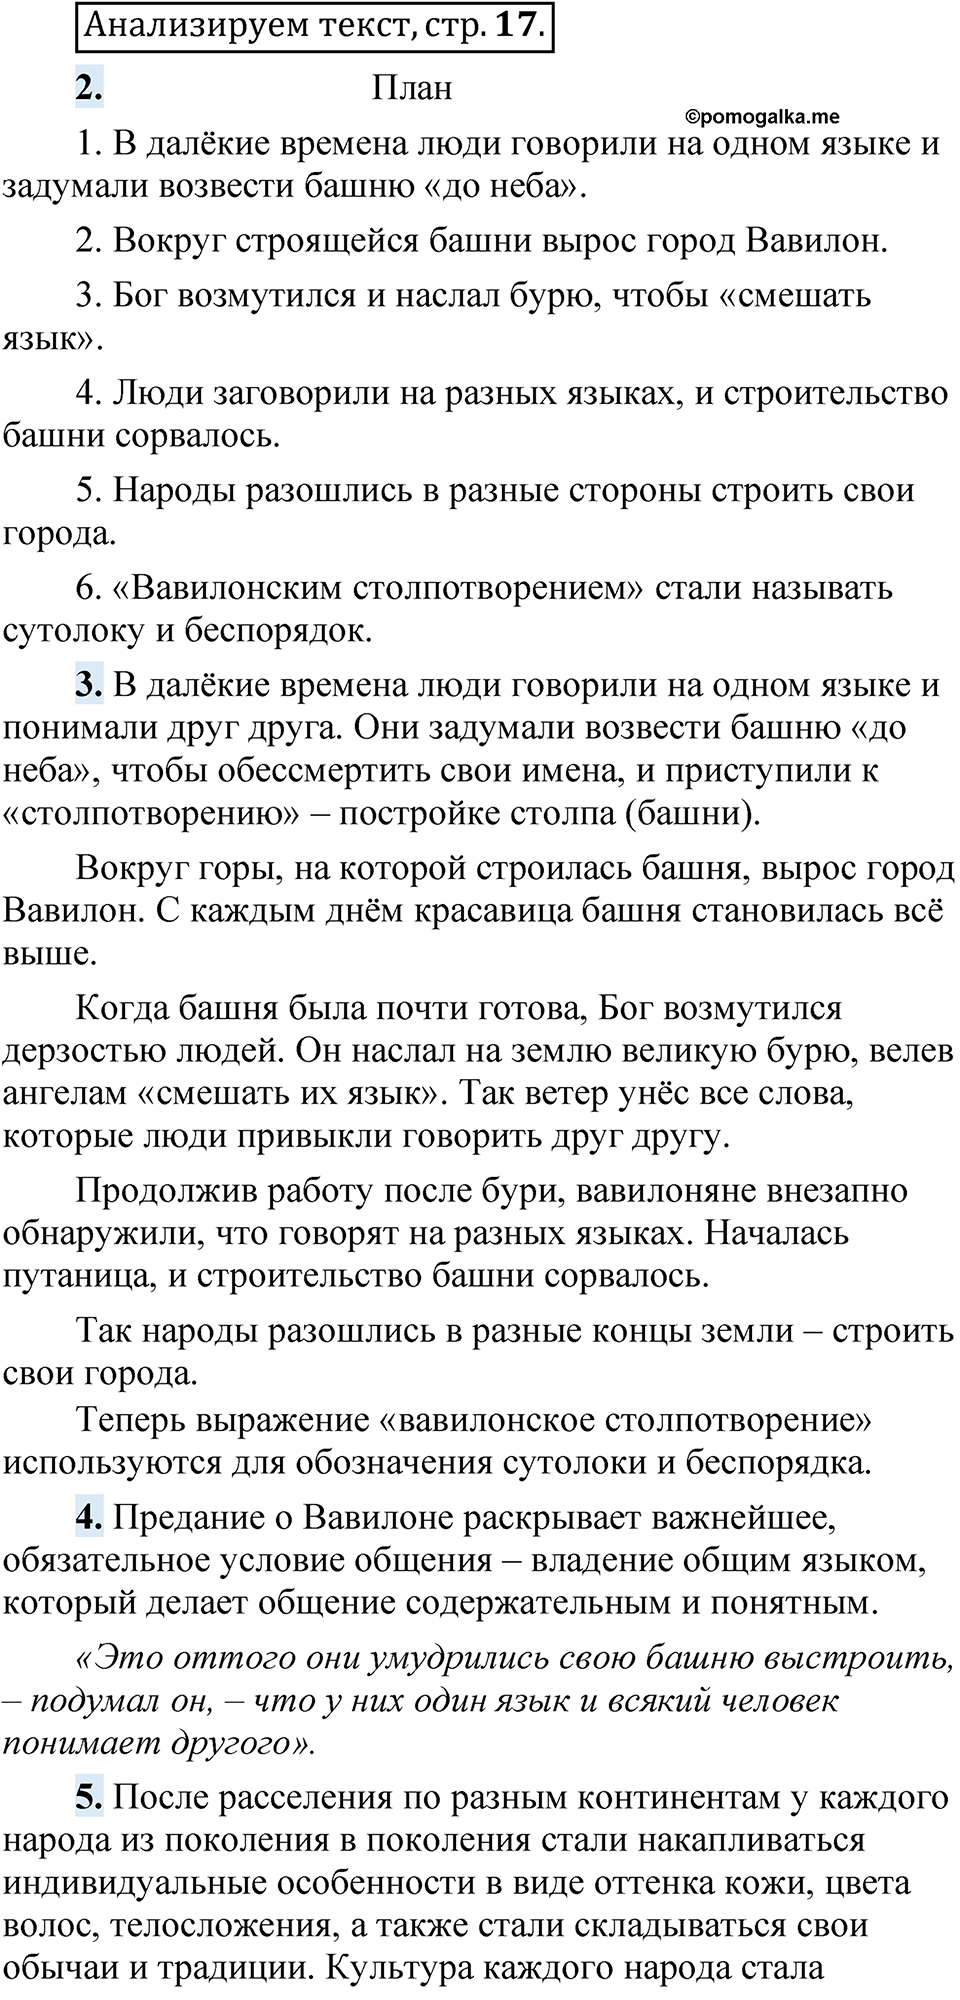 страница 16 Анализируем текст русский язык 5 класс Быстрова, Кибирева 1 часть 2021 год